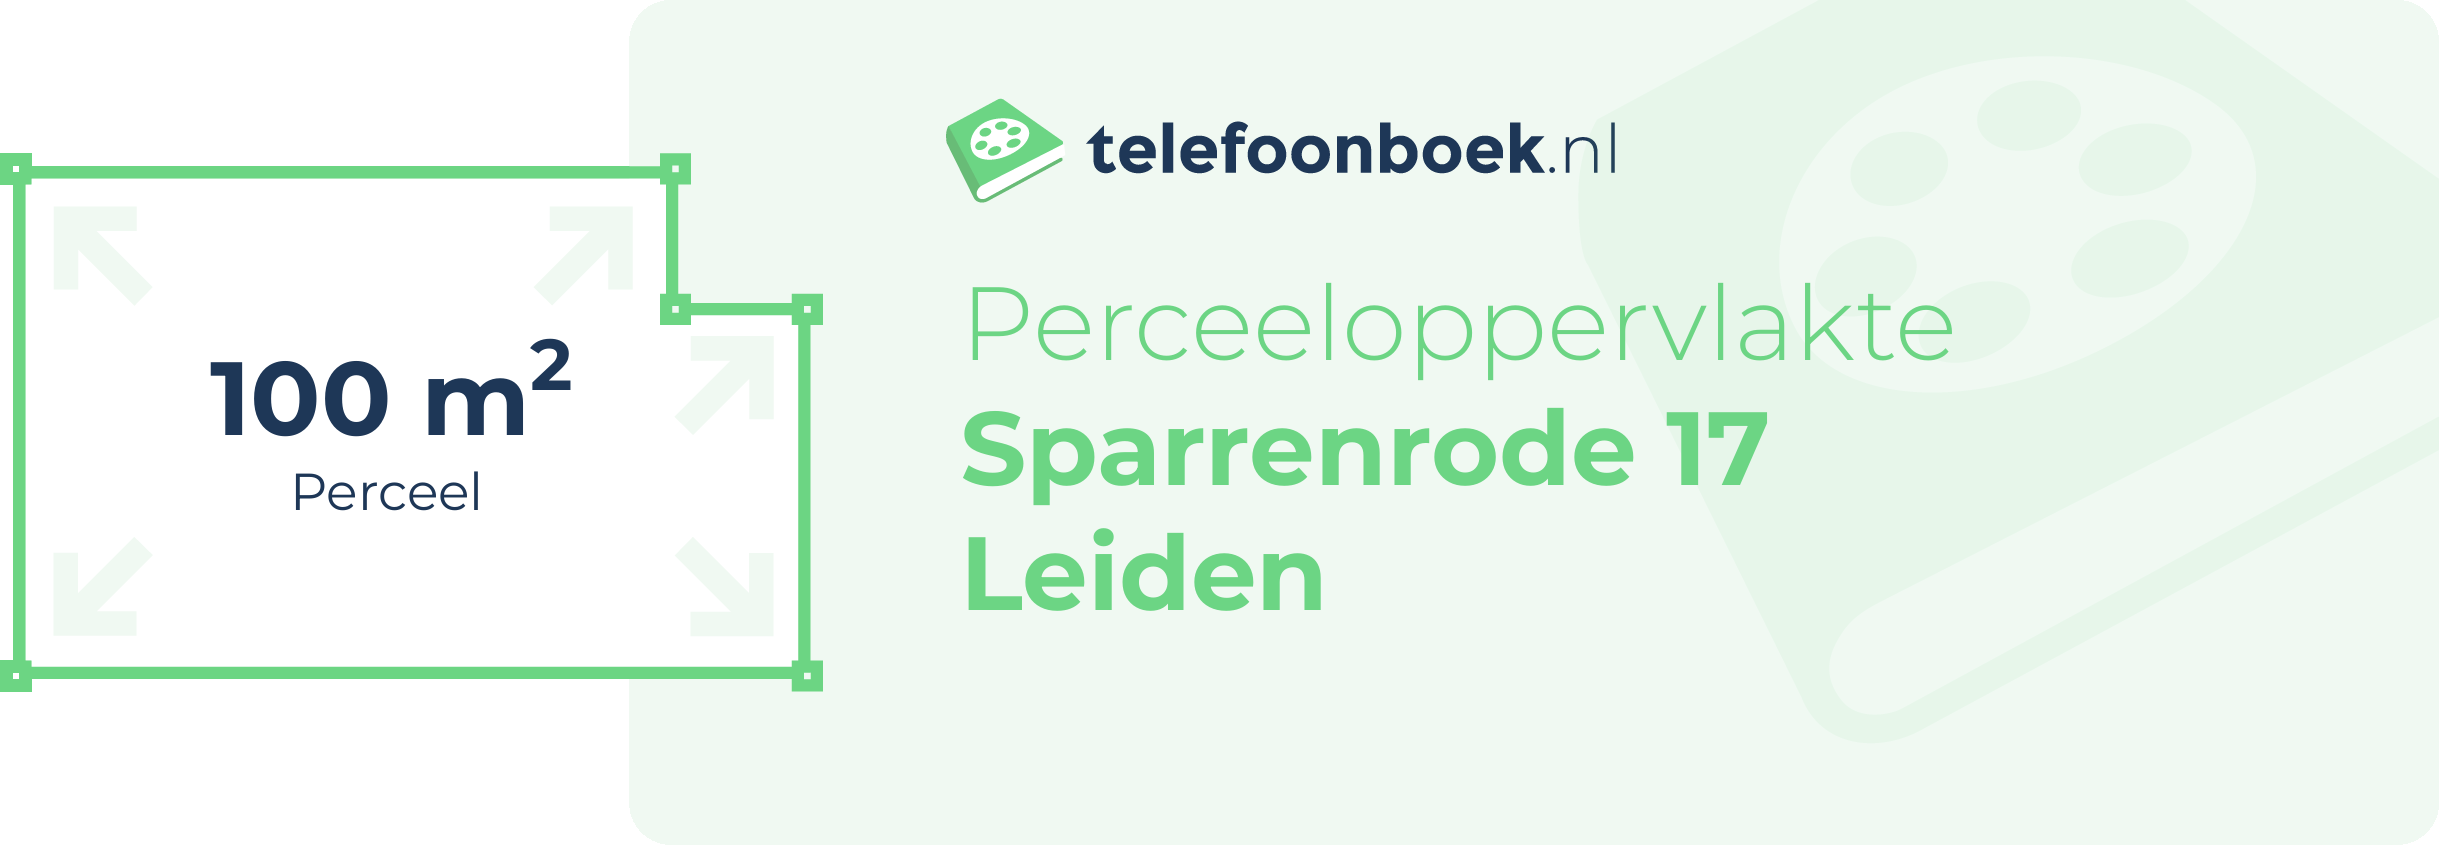 Perceeloppervlakte Sparrenrode 17 Leiden